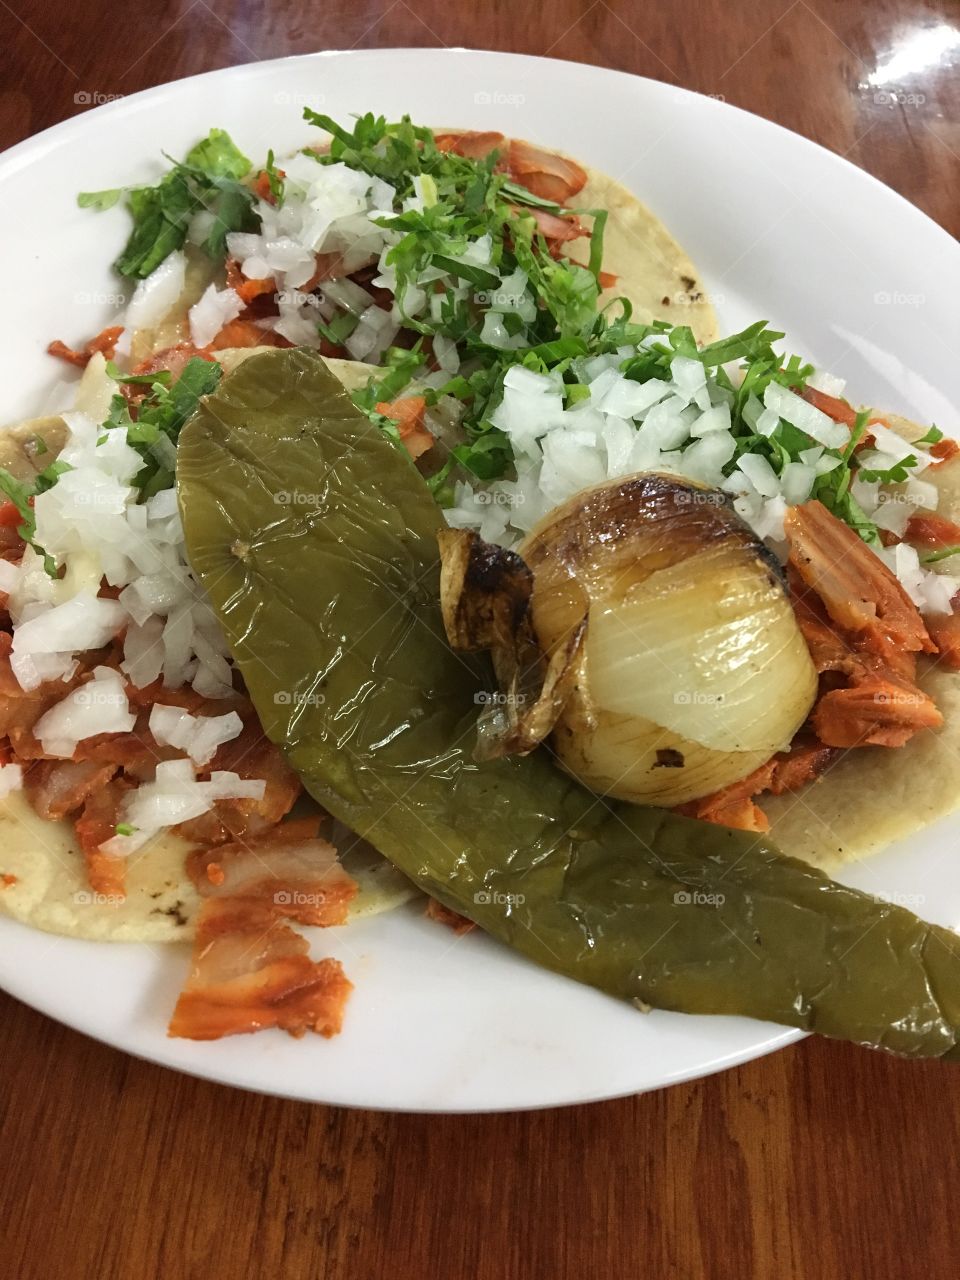 Tacos de Al Pastor con Nopal(cactus) and cebolla(onion) | Nayarit, Mexico